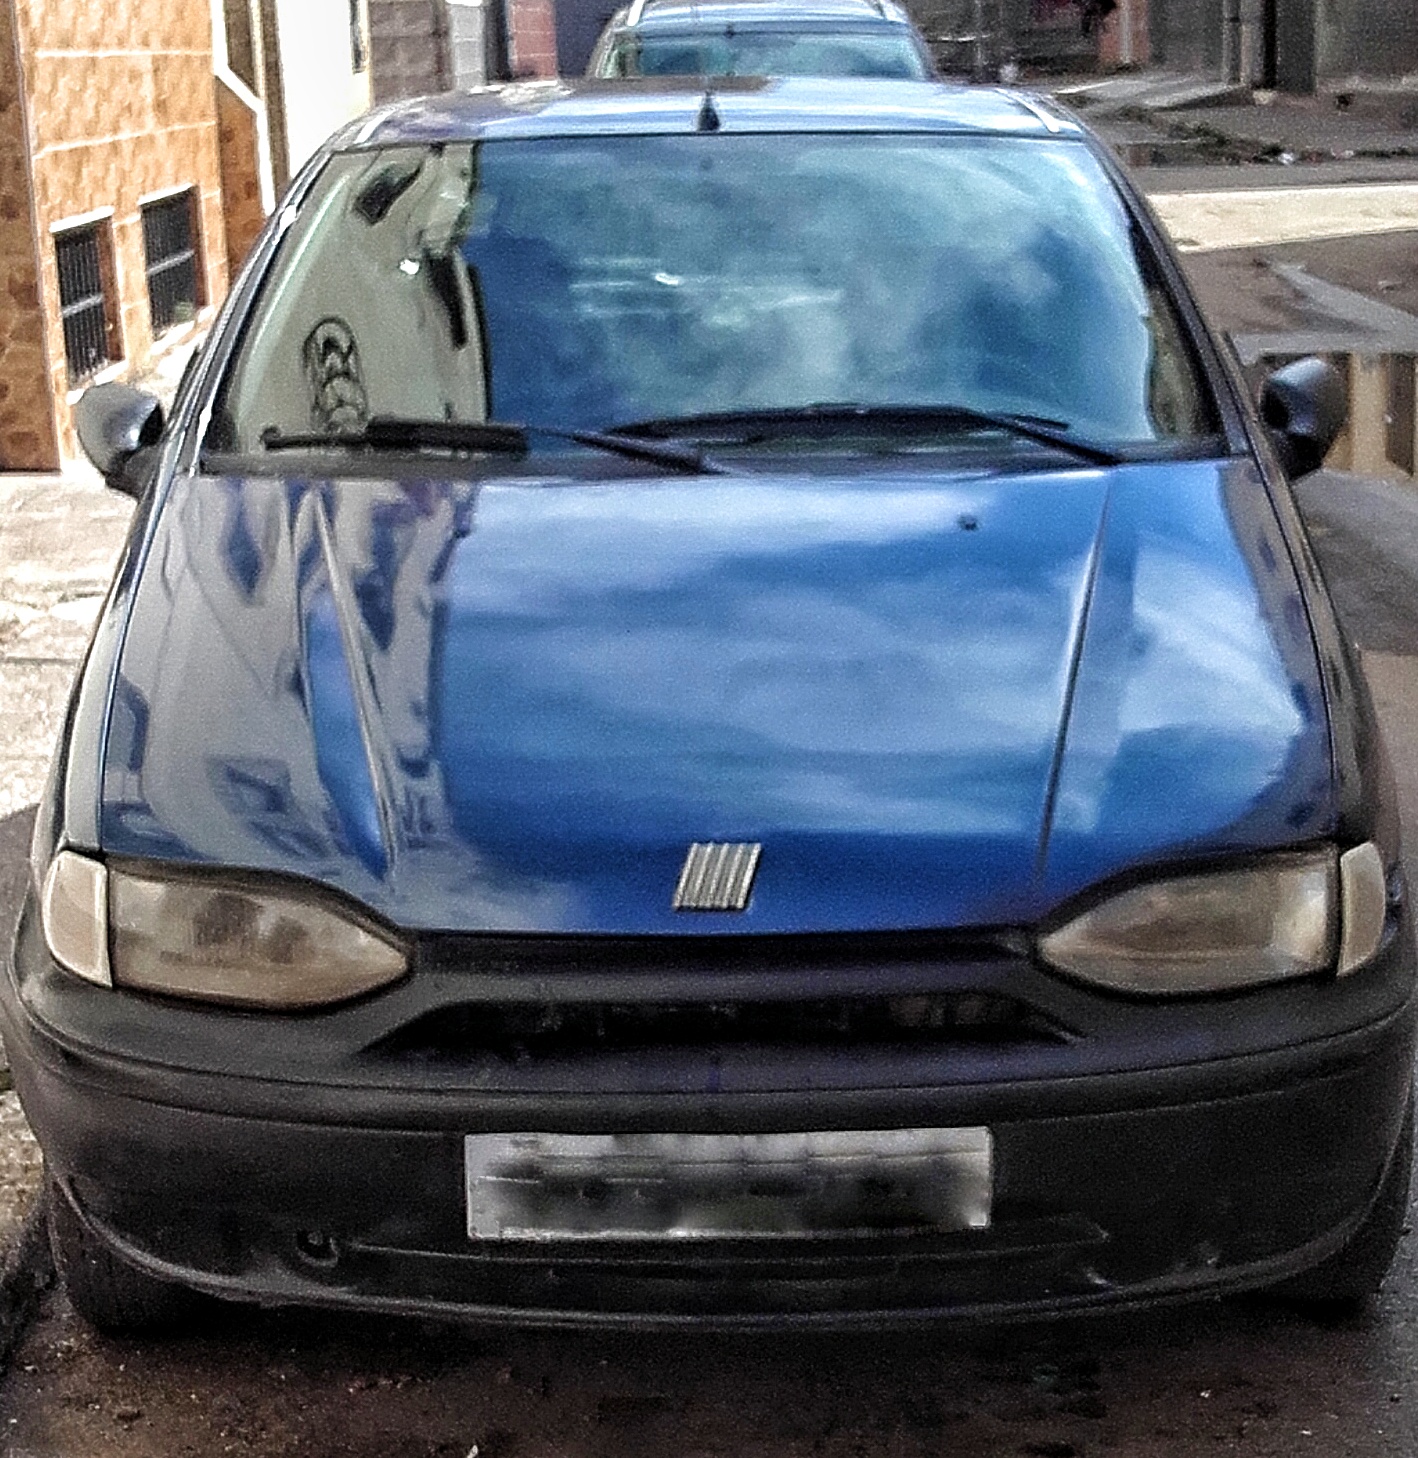 Fiat Palio En Bonne Etat -1999